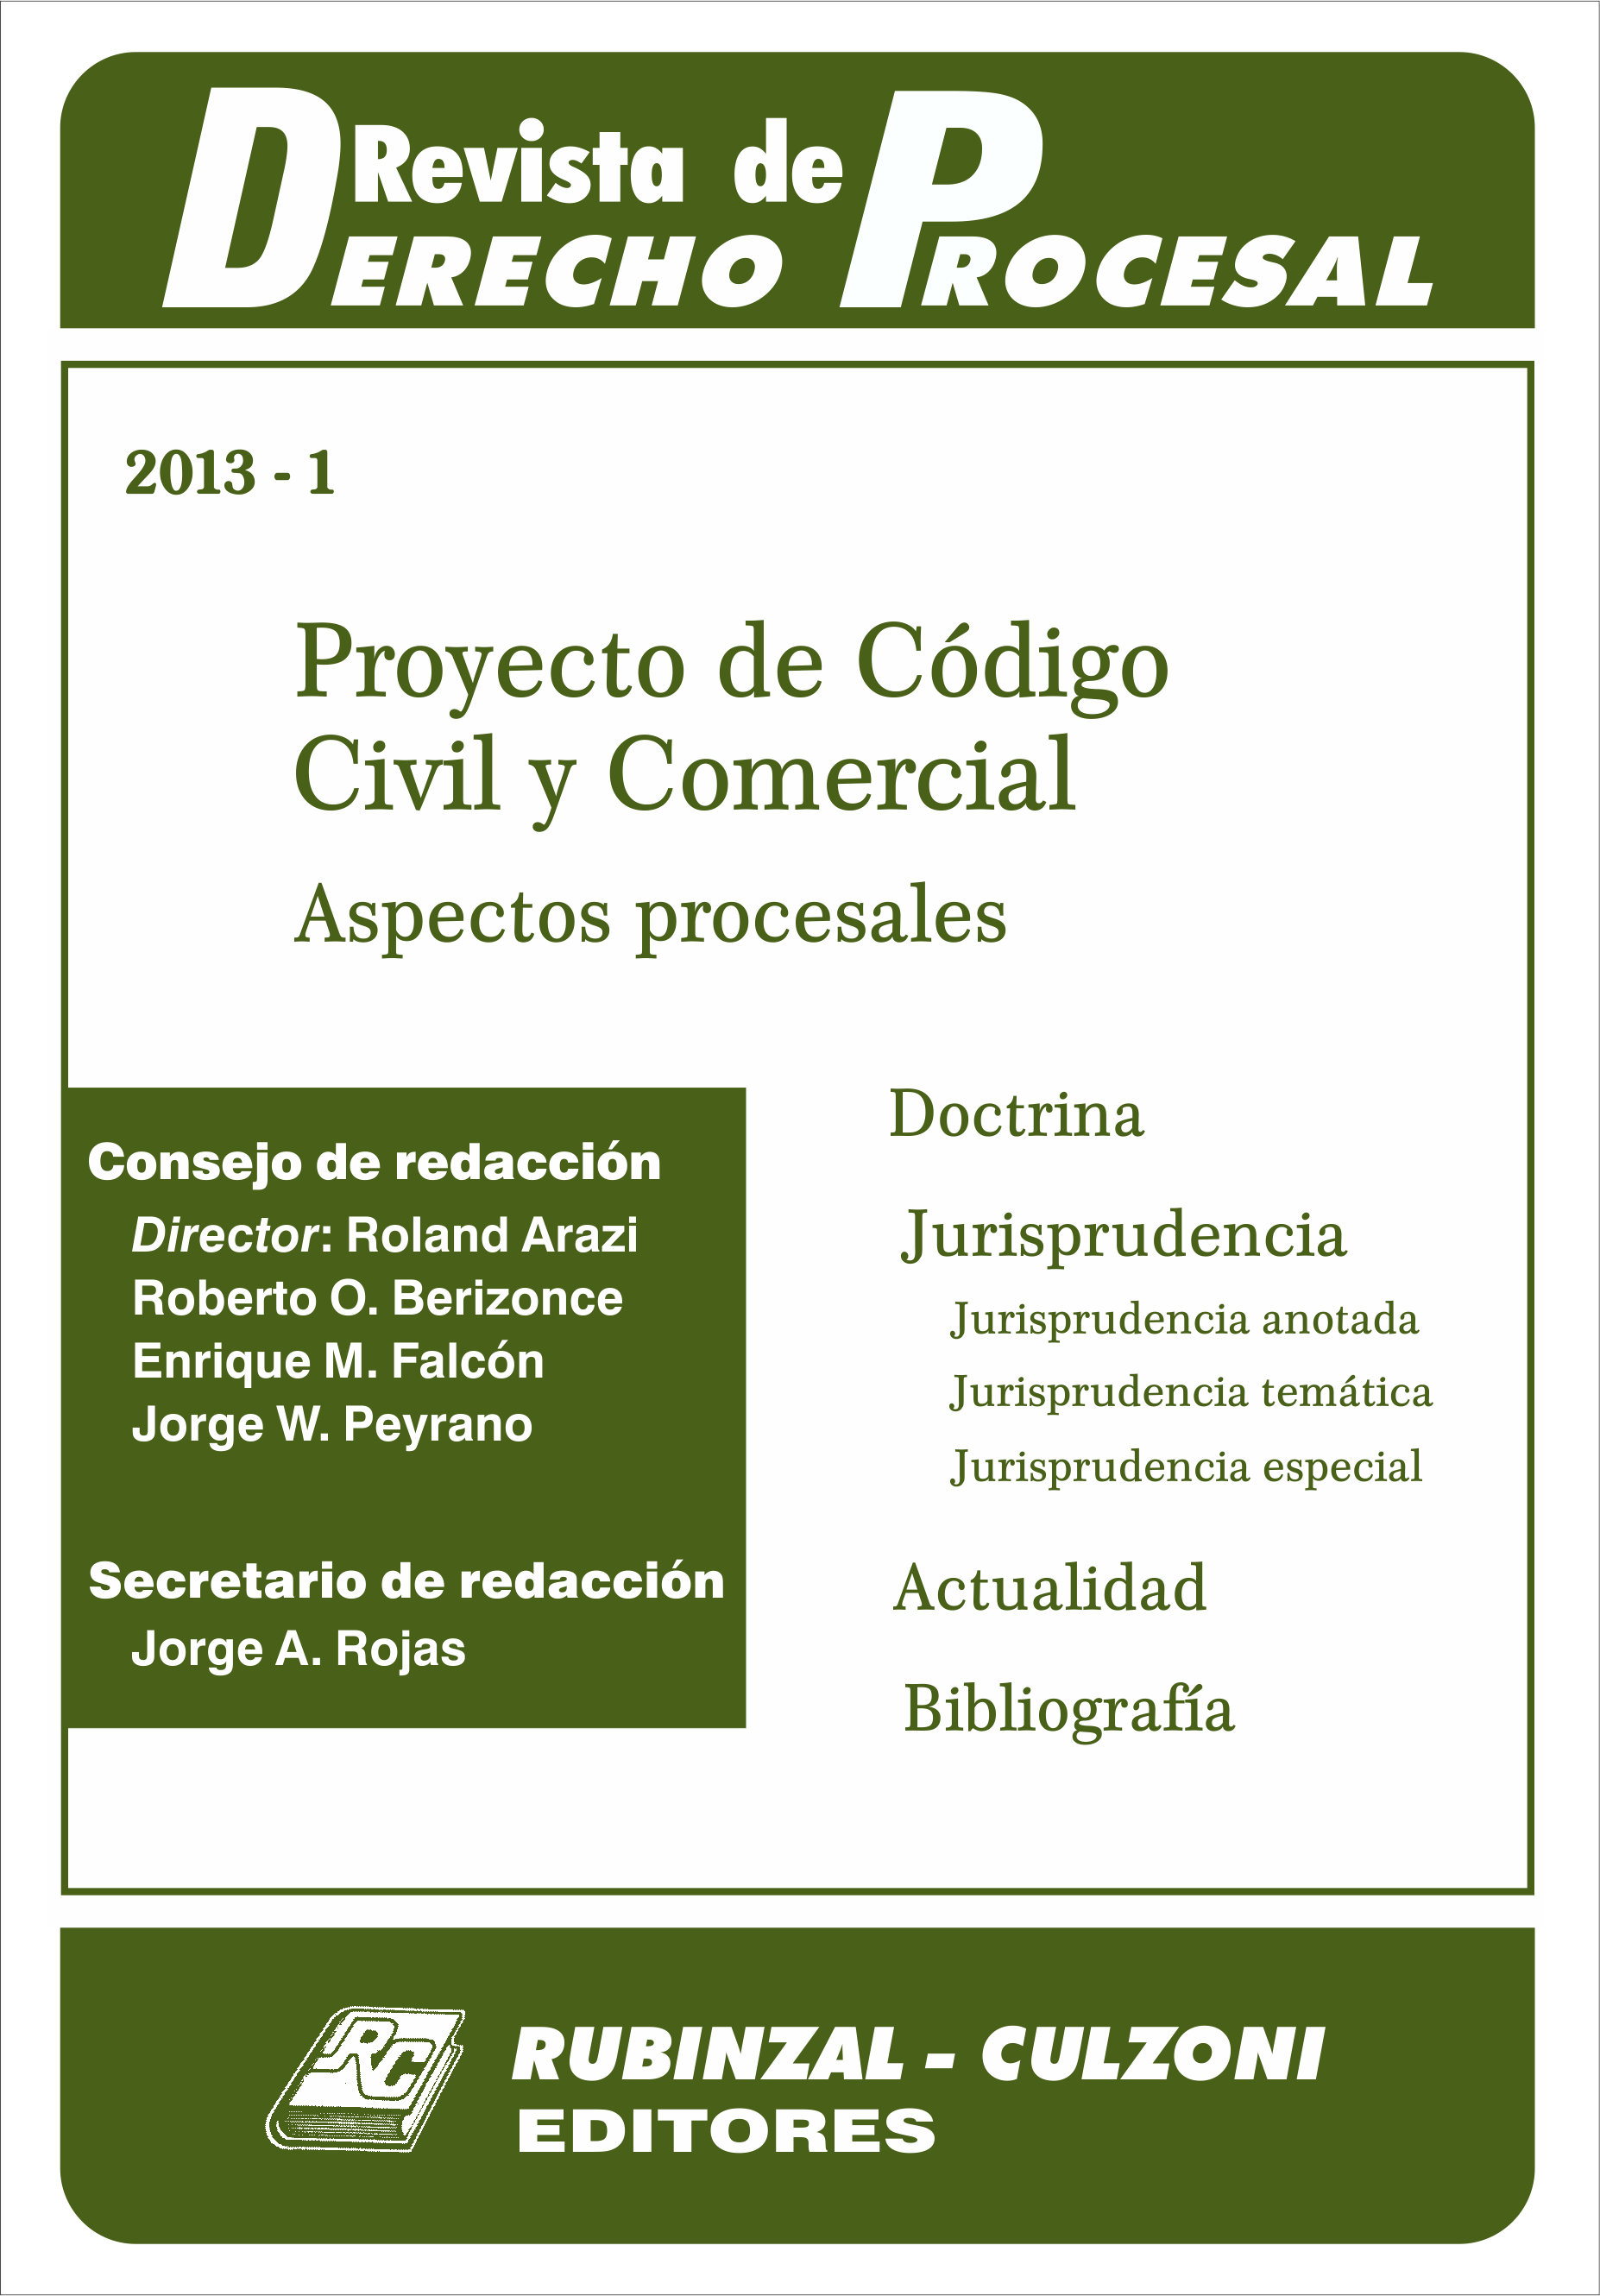 Revista de Derecho Procesal - Proyecto de Código Civil y Comercial